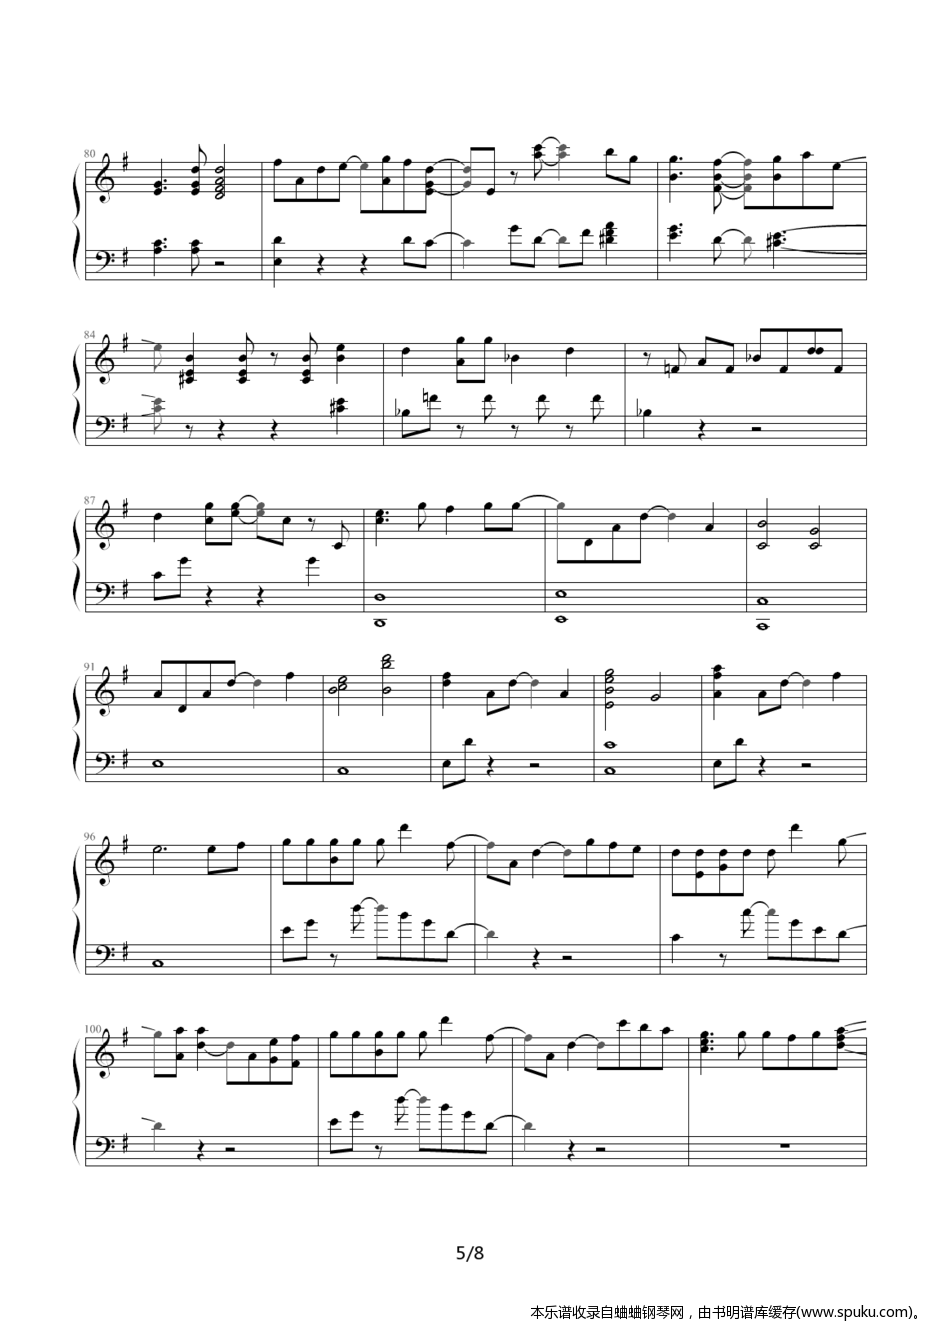 メグメル5-钢琴谱-曲谱